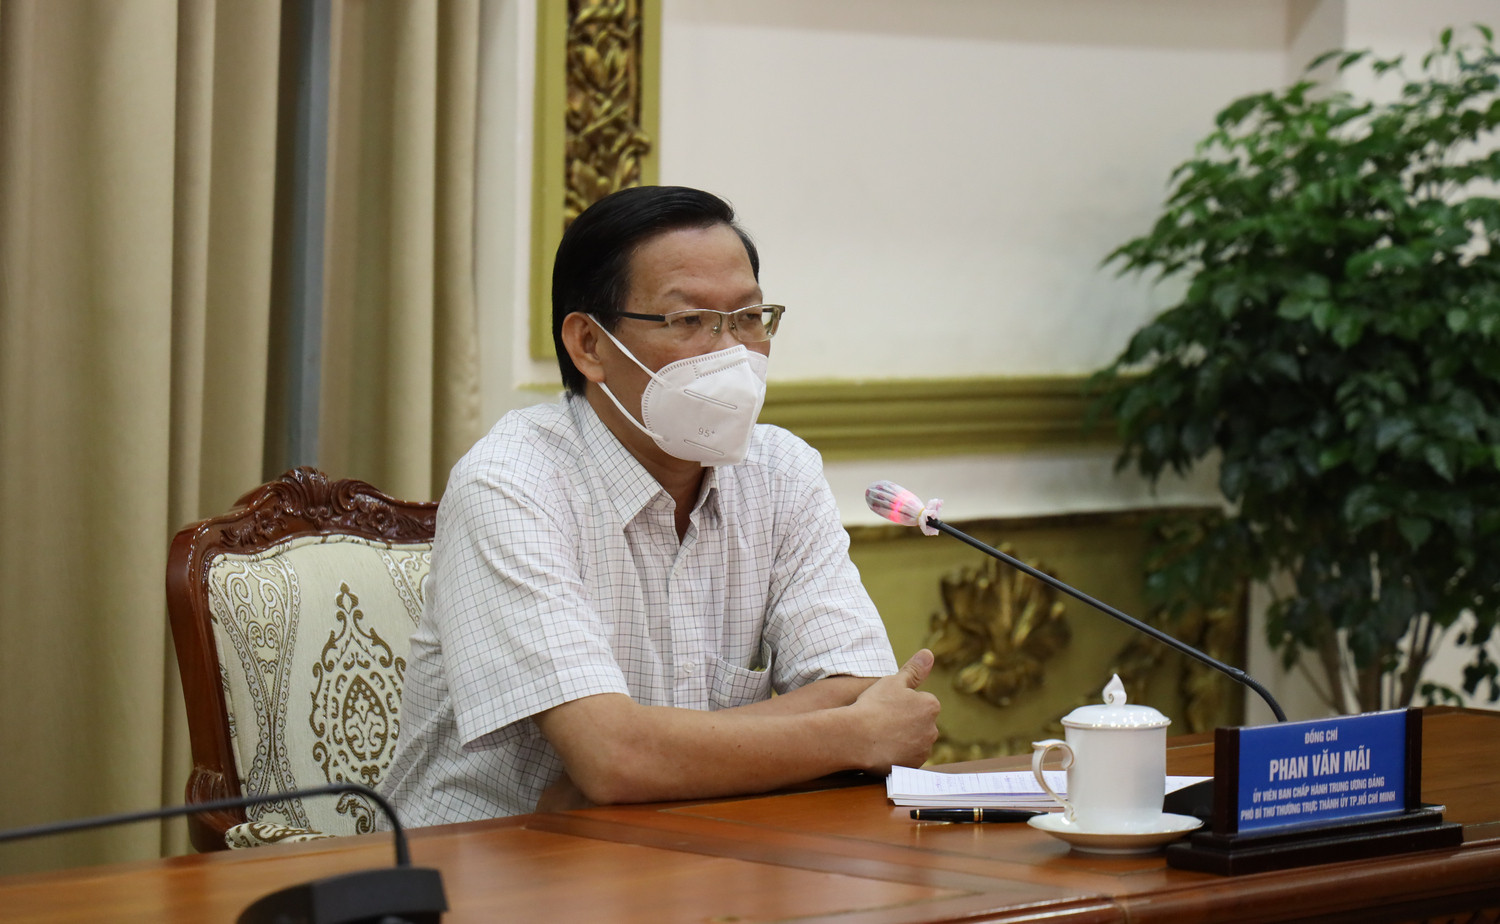 Phó Bí thư  TP.HCM Phan Văn Mãi: 'Có thể đây là trận chiến cuối cùng' - 1